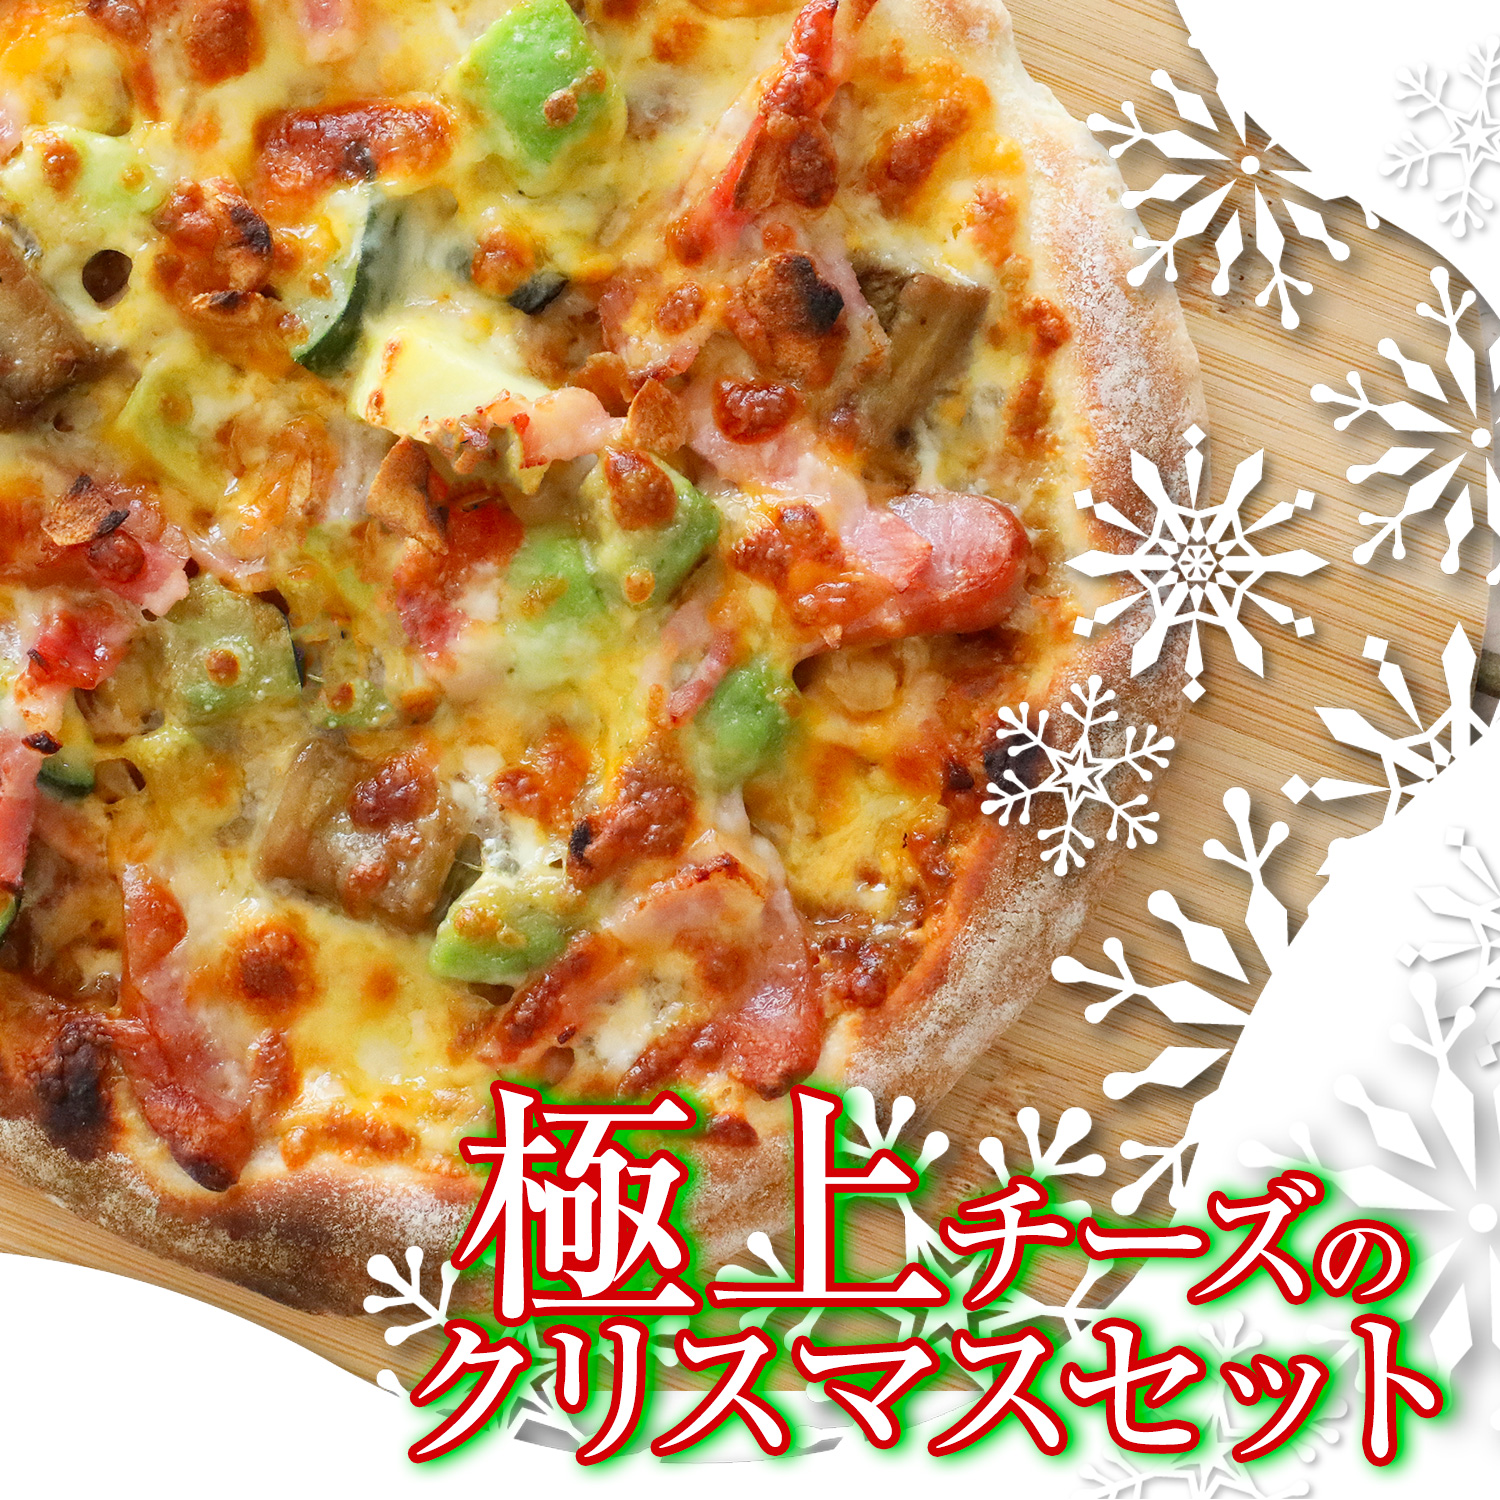 極上チーズのクリスマス ３枚セット ワンランク上のクリスマスセット  クリスマス ギフト プレゼントピザ 冷凍ピザ 冷凍ピッツァ ピザ生地 手作り チーズ 宅配ピザ ピッツァ 冷凍 ぴざ pizza お取り寄せ